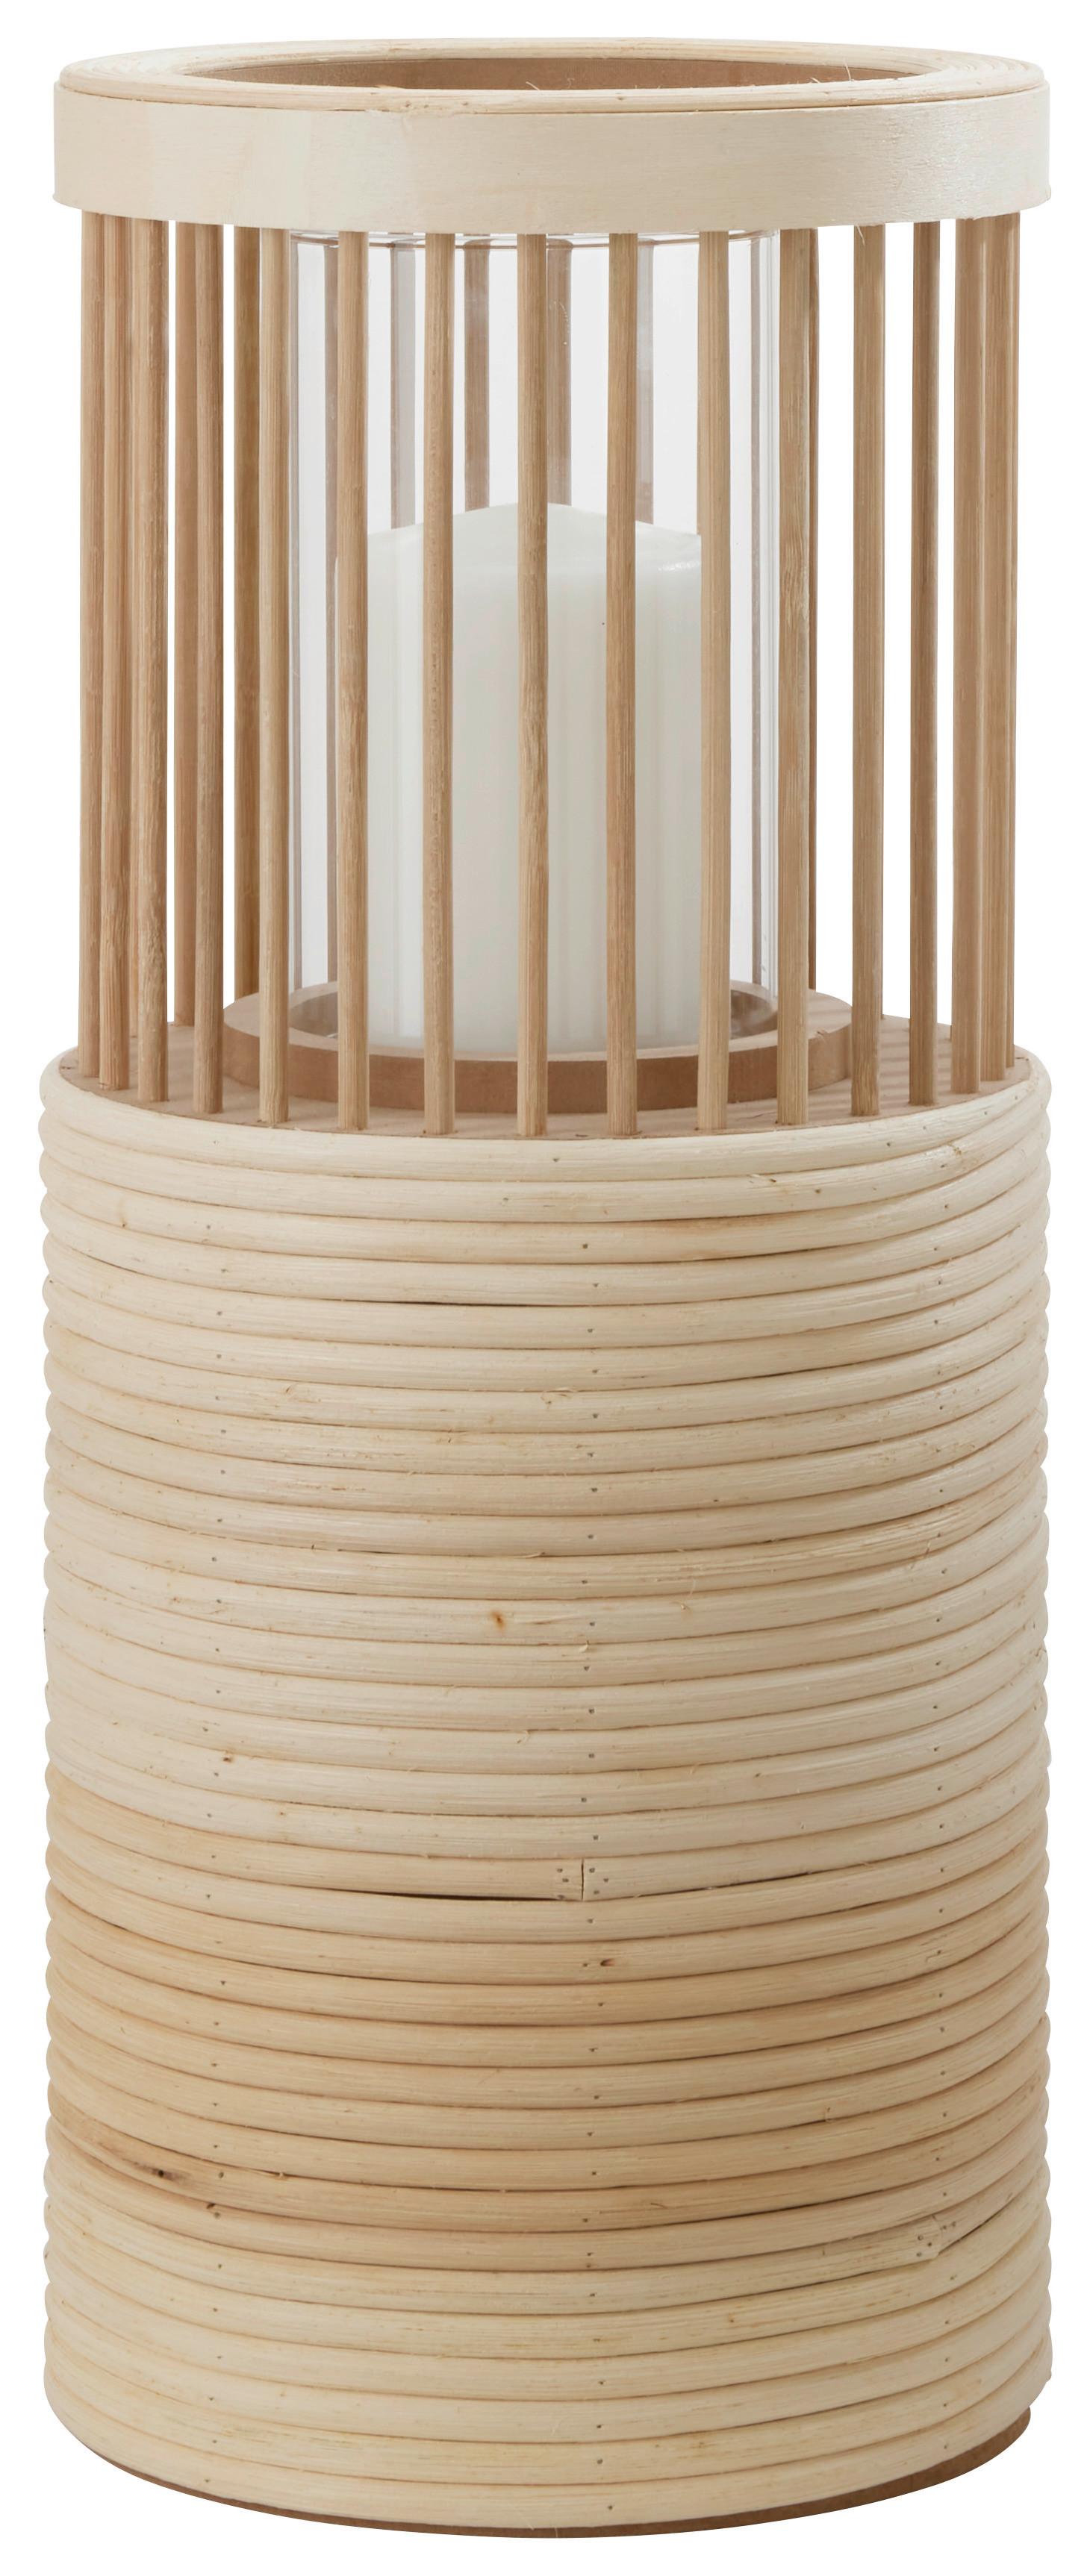 Sklenený Svietnik Bamboo, V: 41,7cm - prírodné farby/priehľadné, drevo/sklo (17,5/41,7cm) - Premium Living